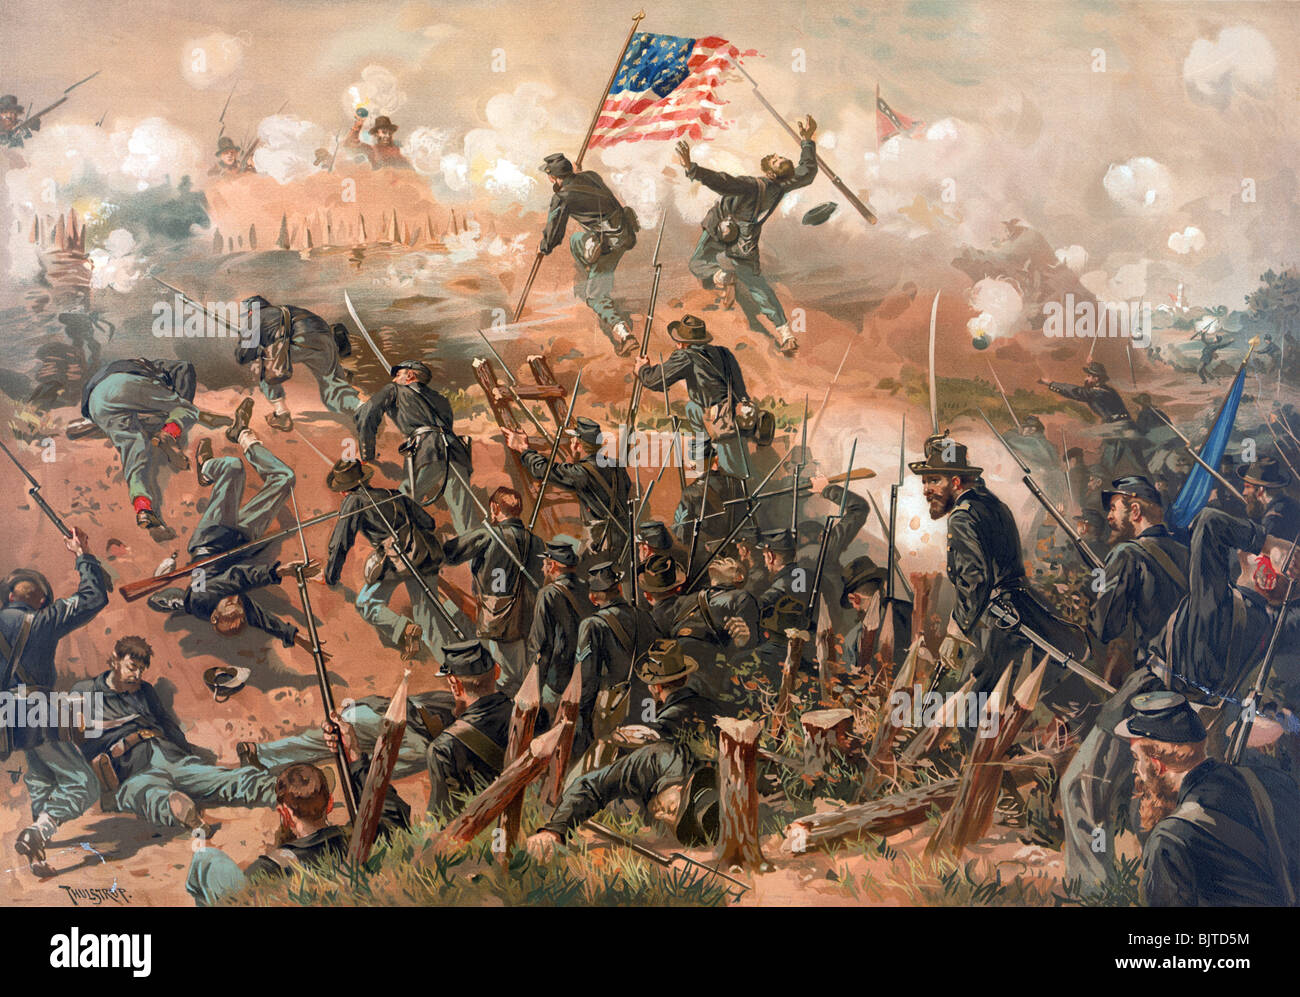 Impresión en color c1888 representa el sitio de Vicksburg (25 de mayo - 4 de julio de 1863) durante la Guerra Civil Americana. Foto de stock